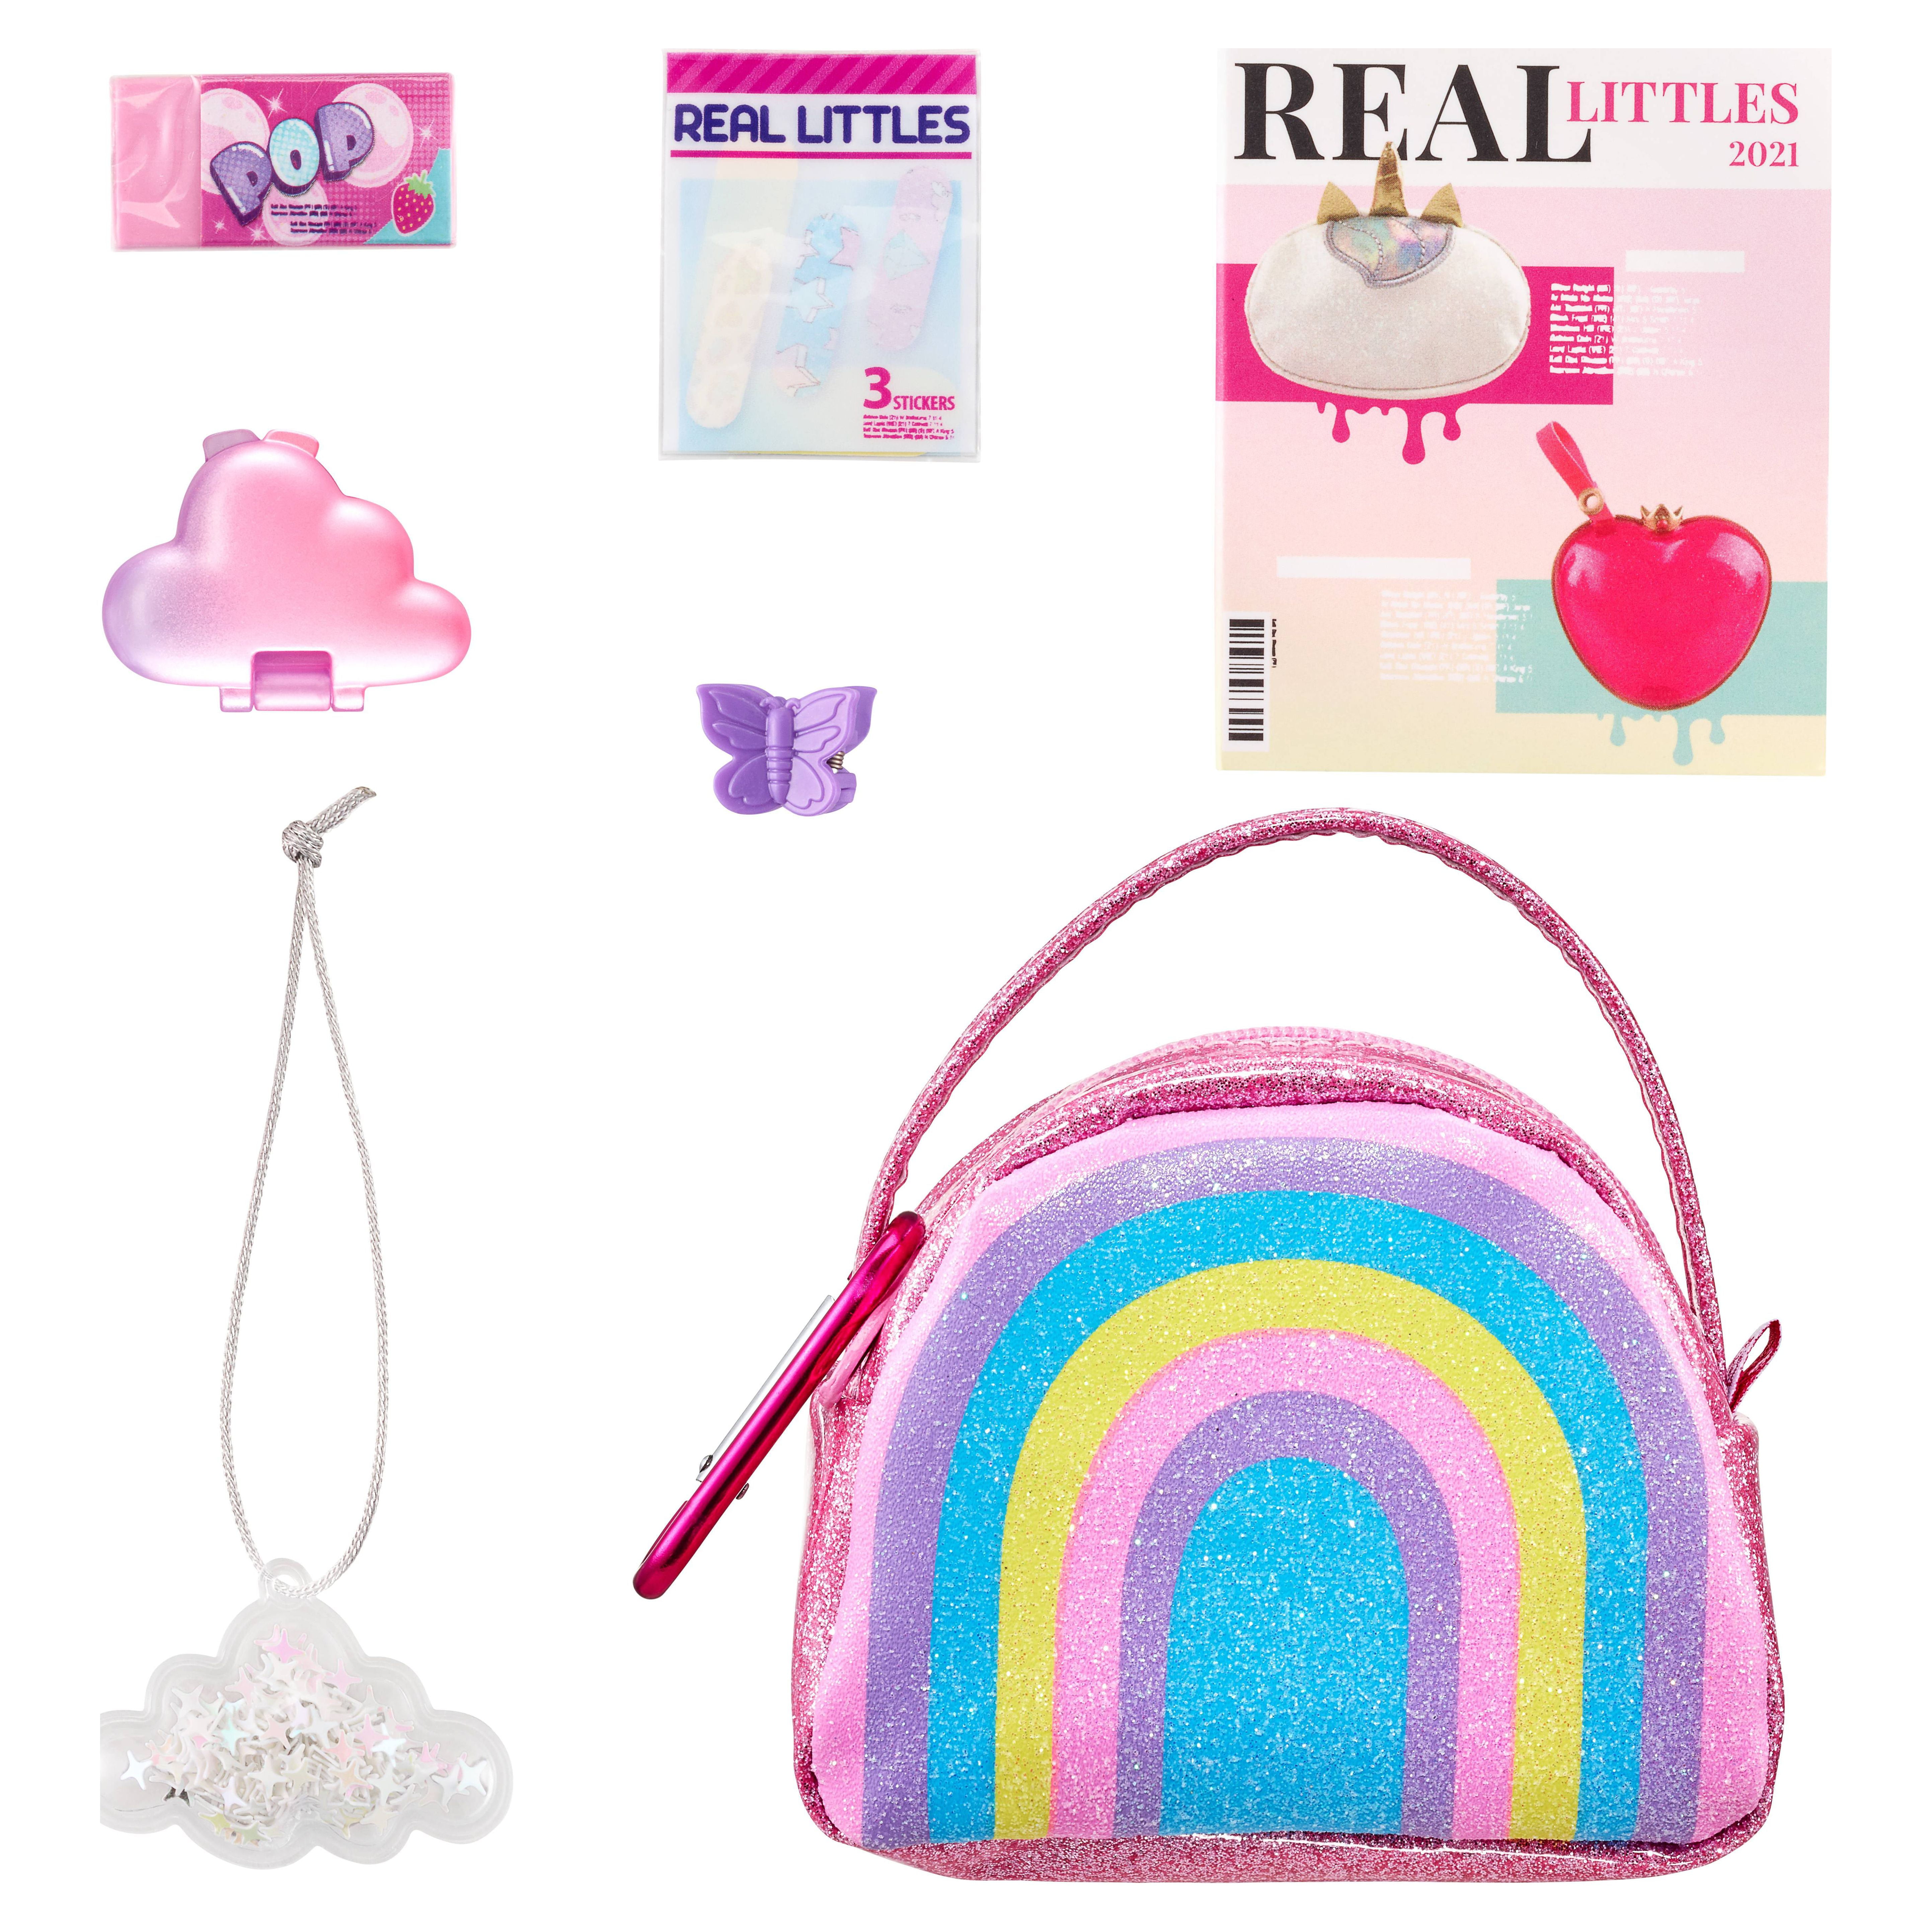 Real Littles Handbags + Gamer Girl Bag 